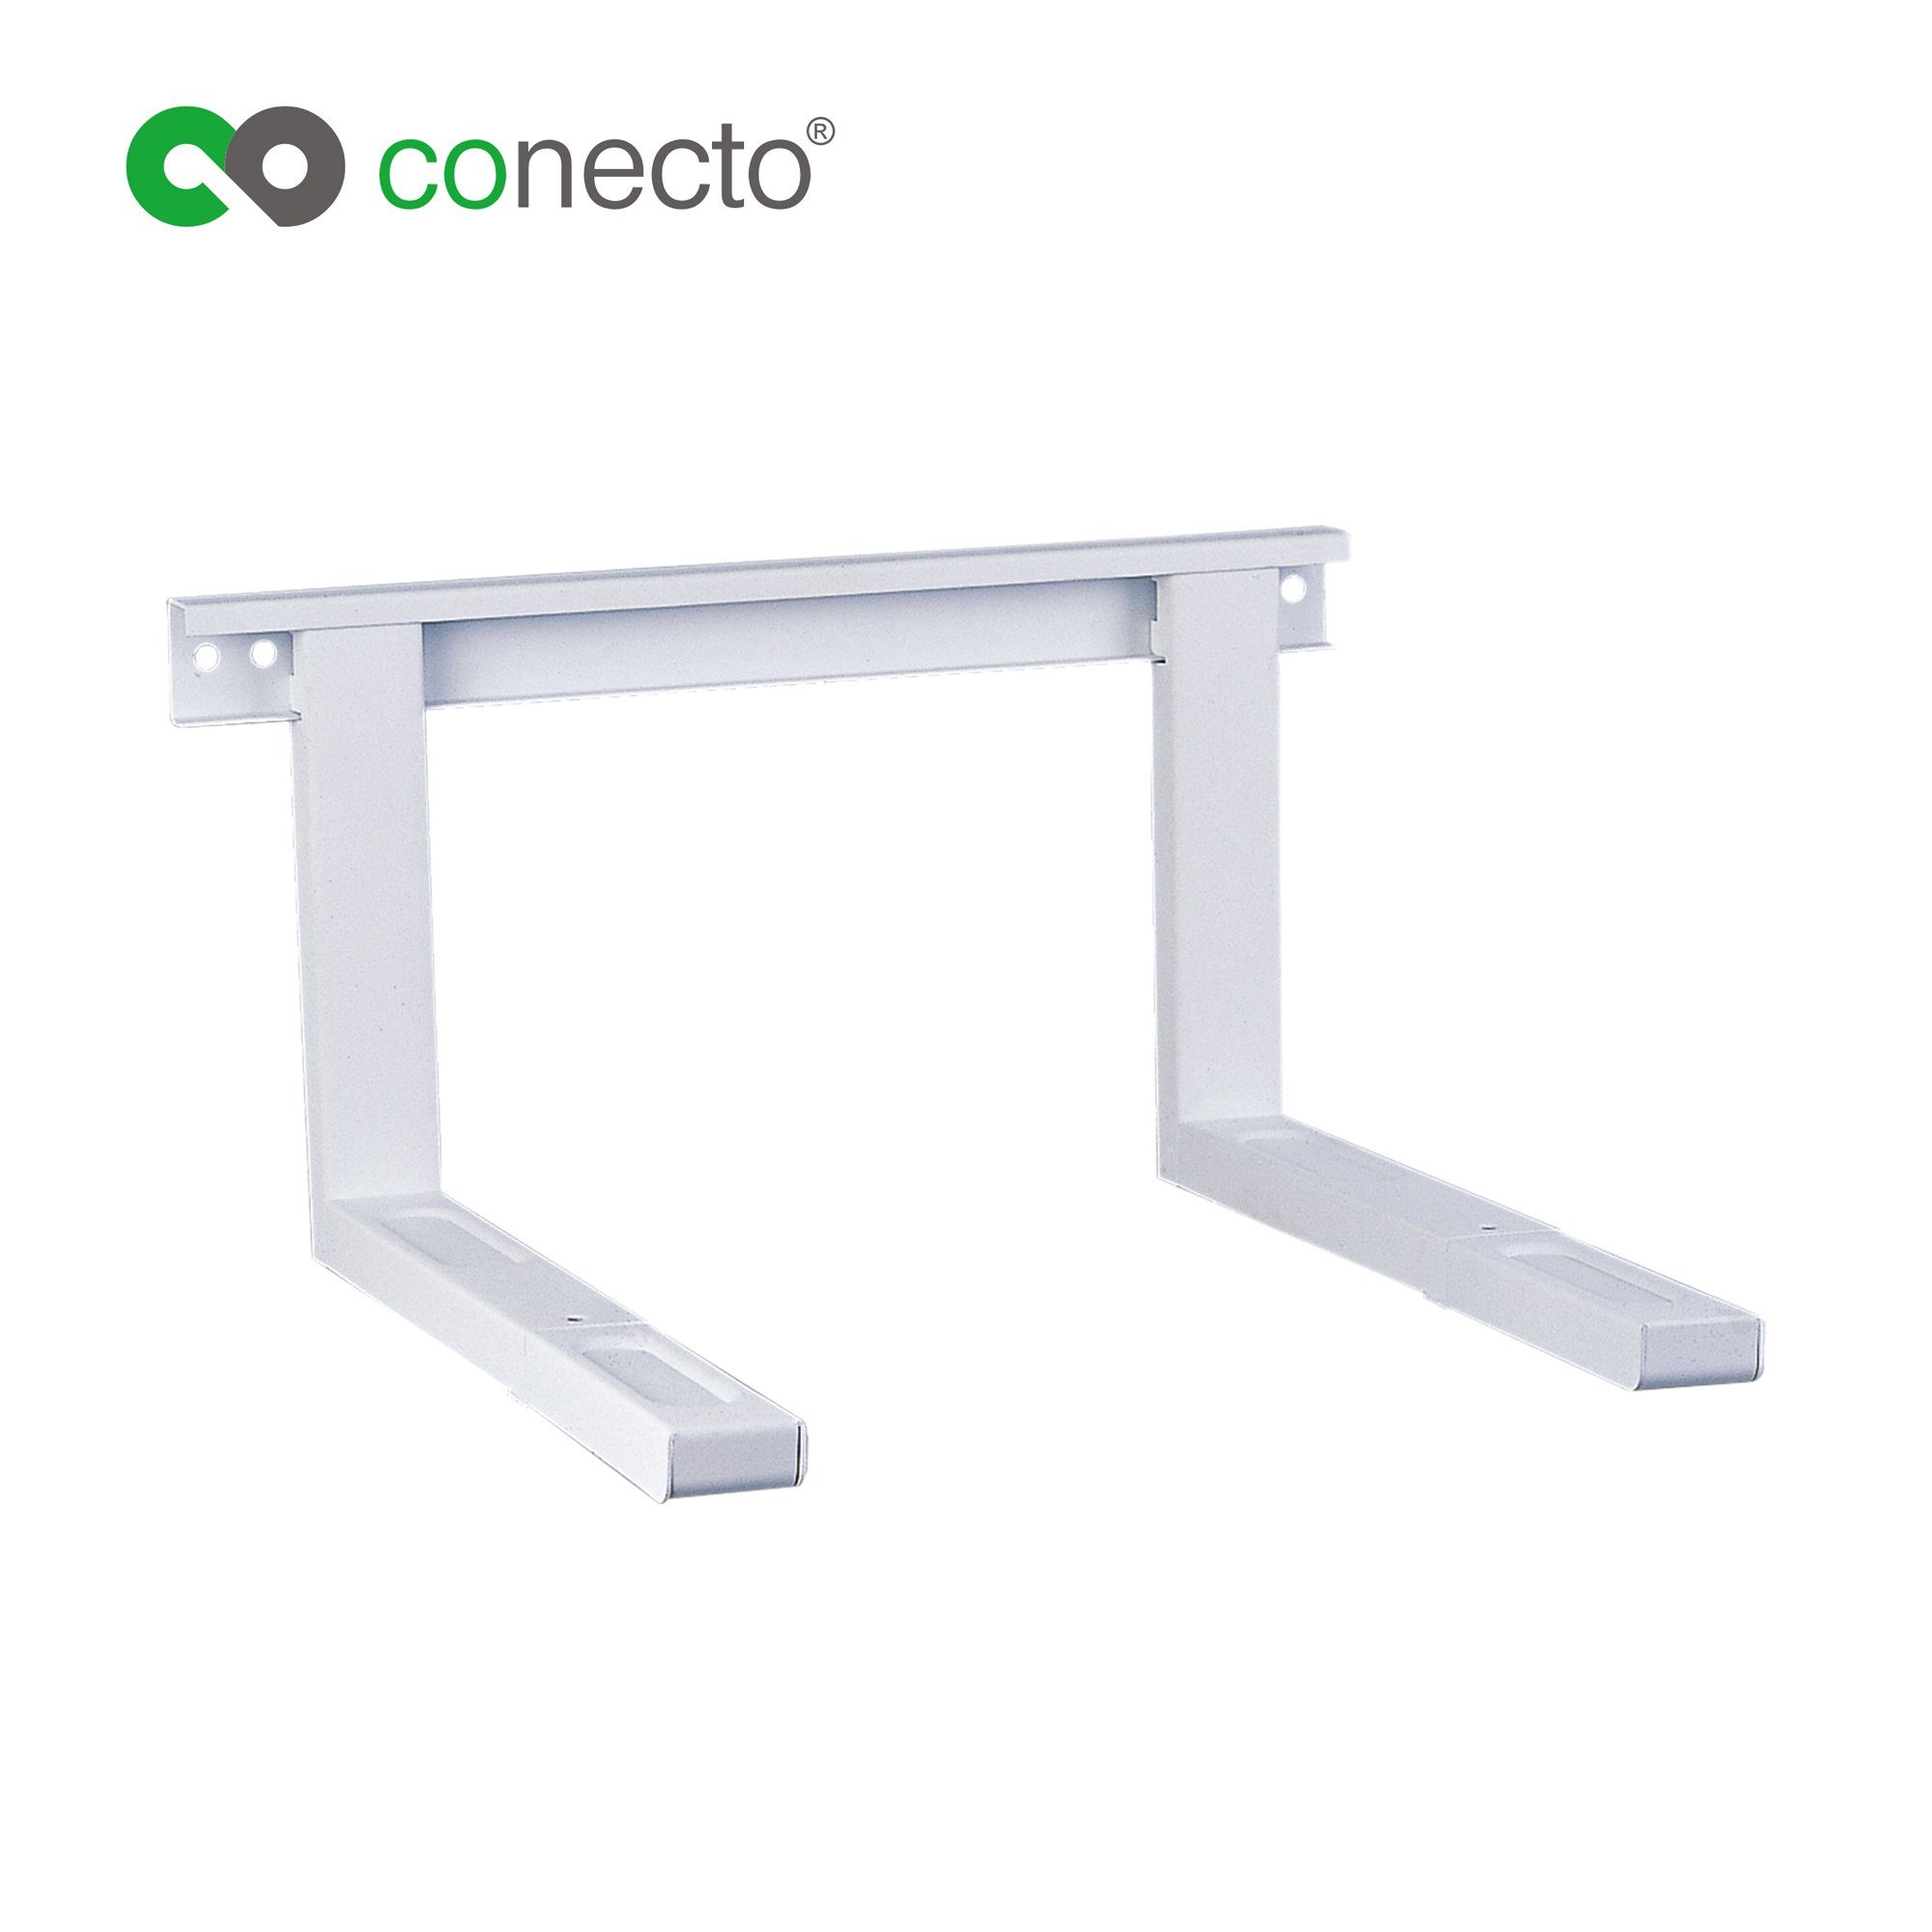 conecto conecto CC50304 Universal-/Mikrowellenhalterung für Wandmontage Längen Mikrowellen-Wandhalterung